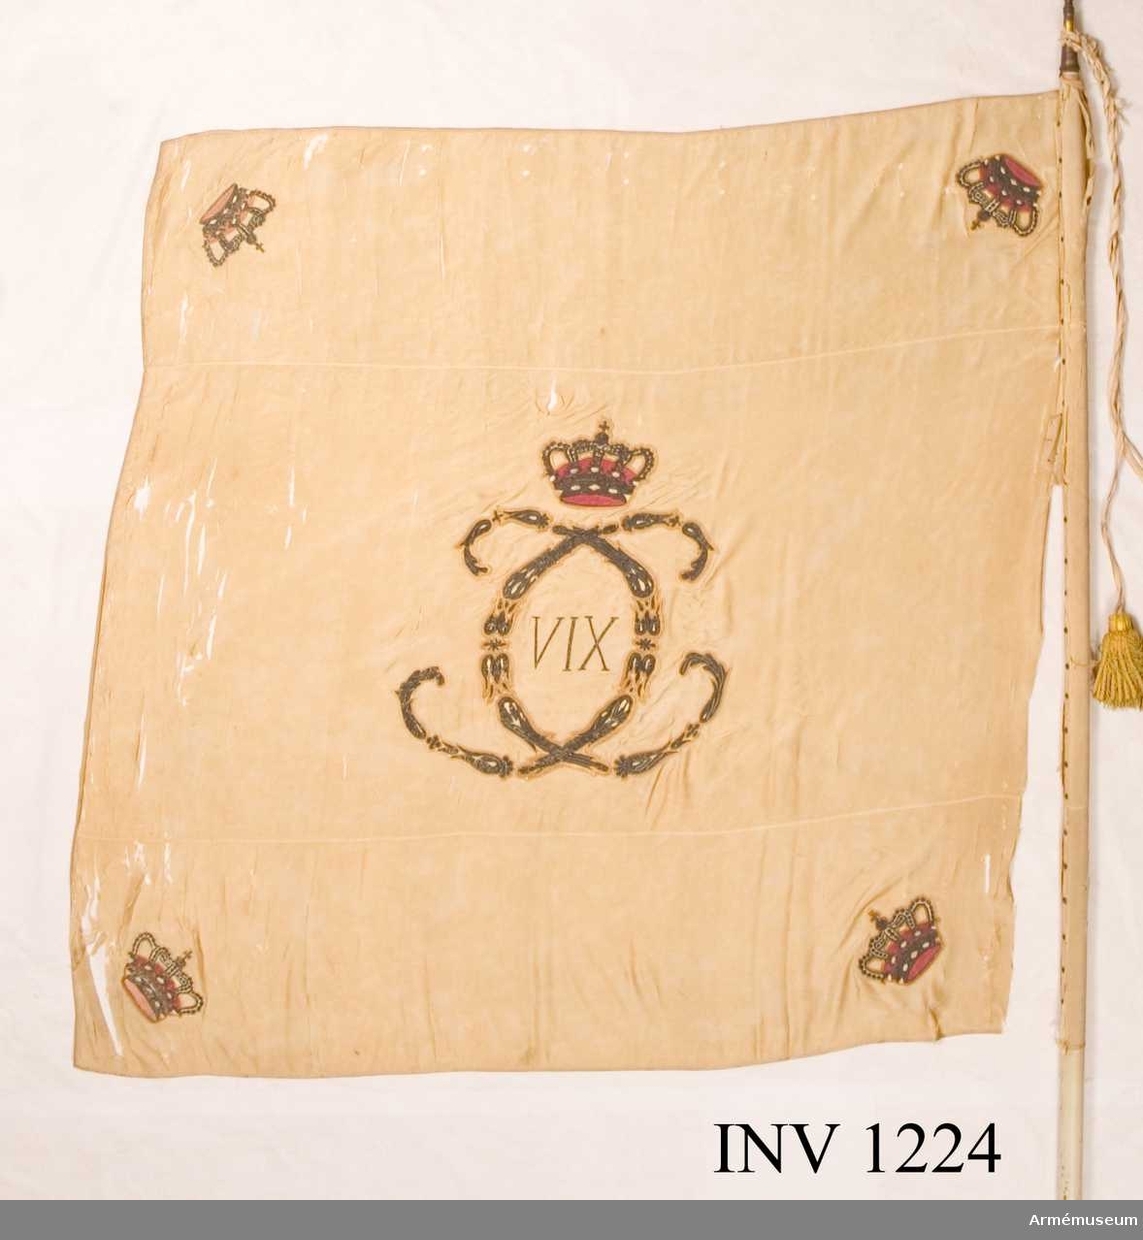 På det gulvita kyprade fansidenet sitter i mitten ett broderat monogram föreställande två motställda "C" inneslutande "XIV". Broderiet utfört i plattsöm med silke och silvertråd. Ovanför monogrammet sitter en kunglig krona utförd i plattsöm med foder i rött silke. I fanans hörn sitter snedställda kronor i rött silke. Fanspetsen har Karl XIV Johans monogram, dock mycket ärgat. Fanstången är gulvitmålad. Kravatten, den lilla del som återstår, är uppsydd på ett bomullsband.